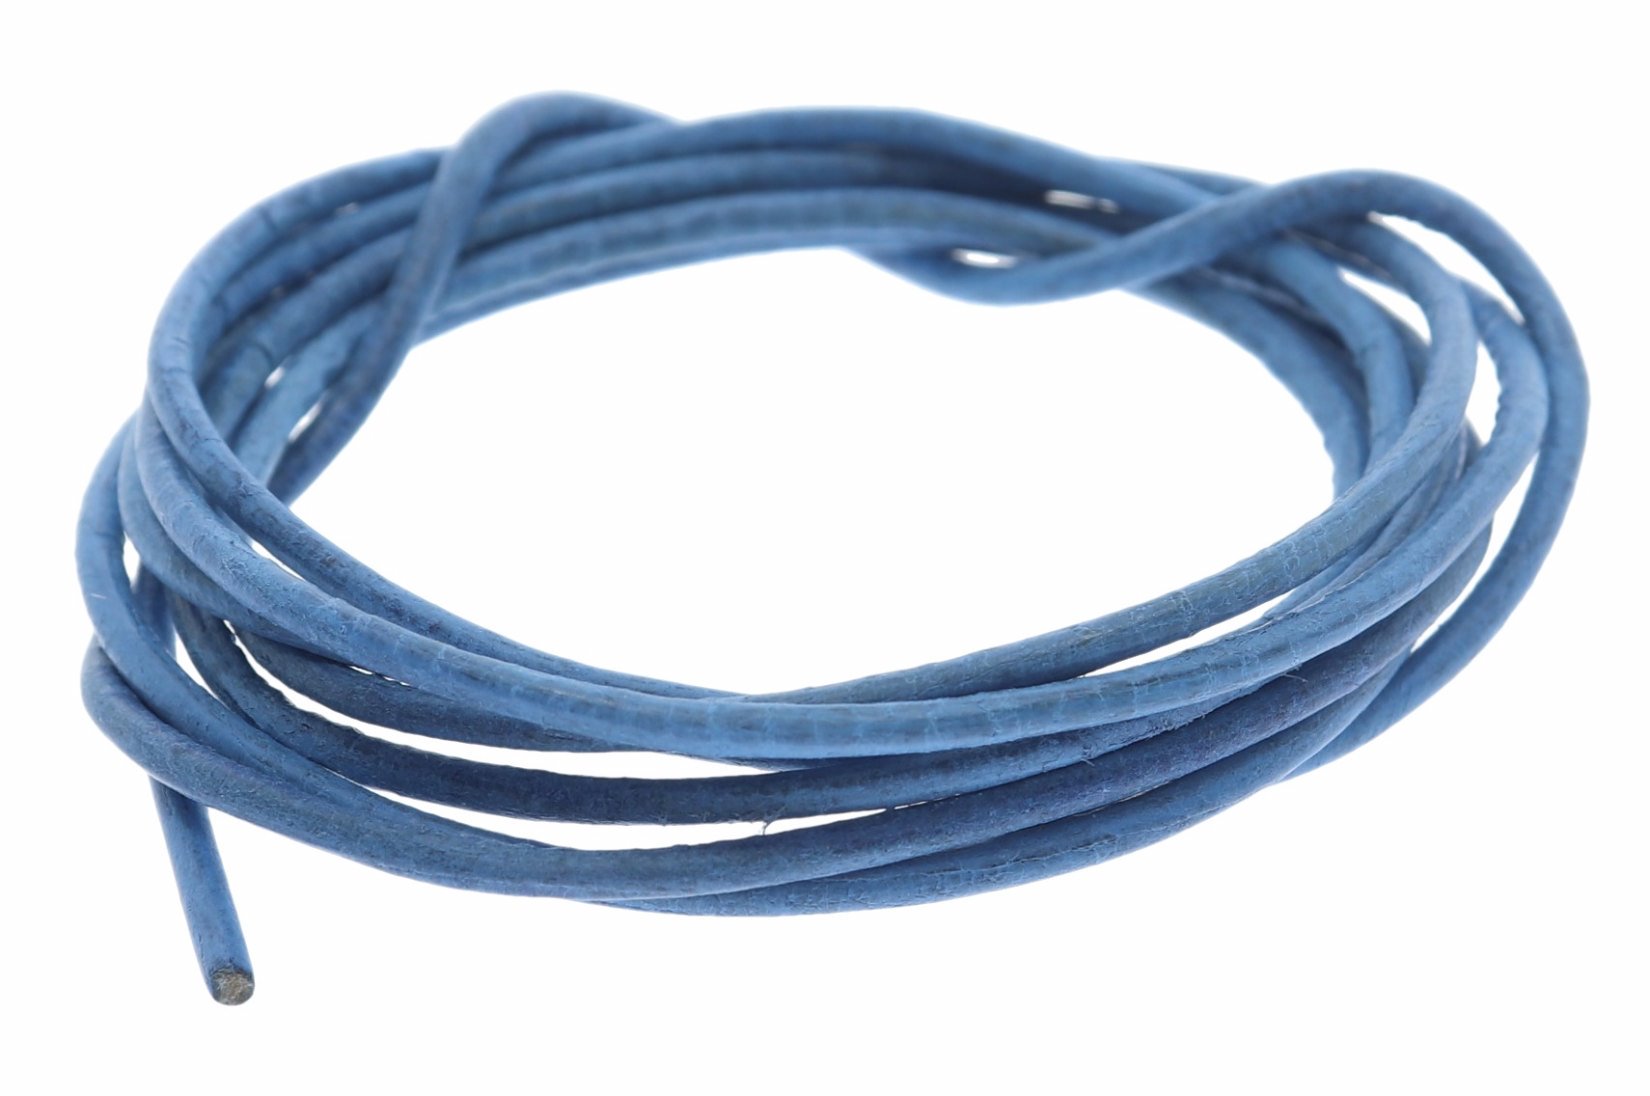 Lederband hell blau -  Lederbänder Lederriemen Lederschnur 1.5mm Ø - 100cm L104